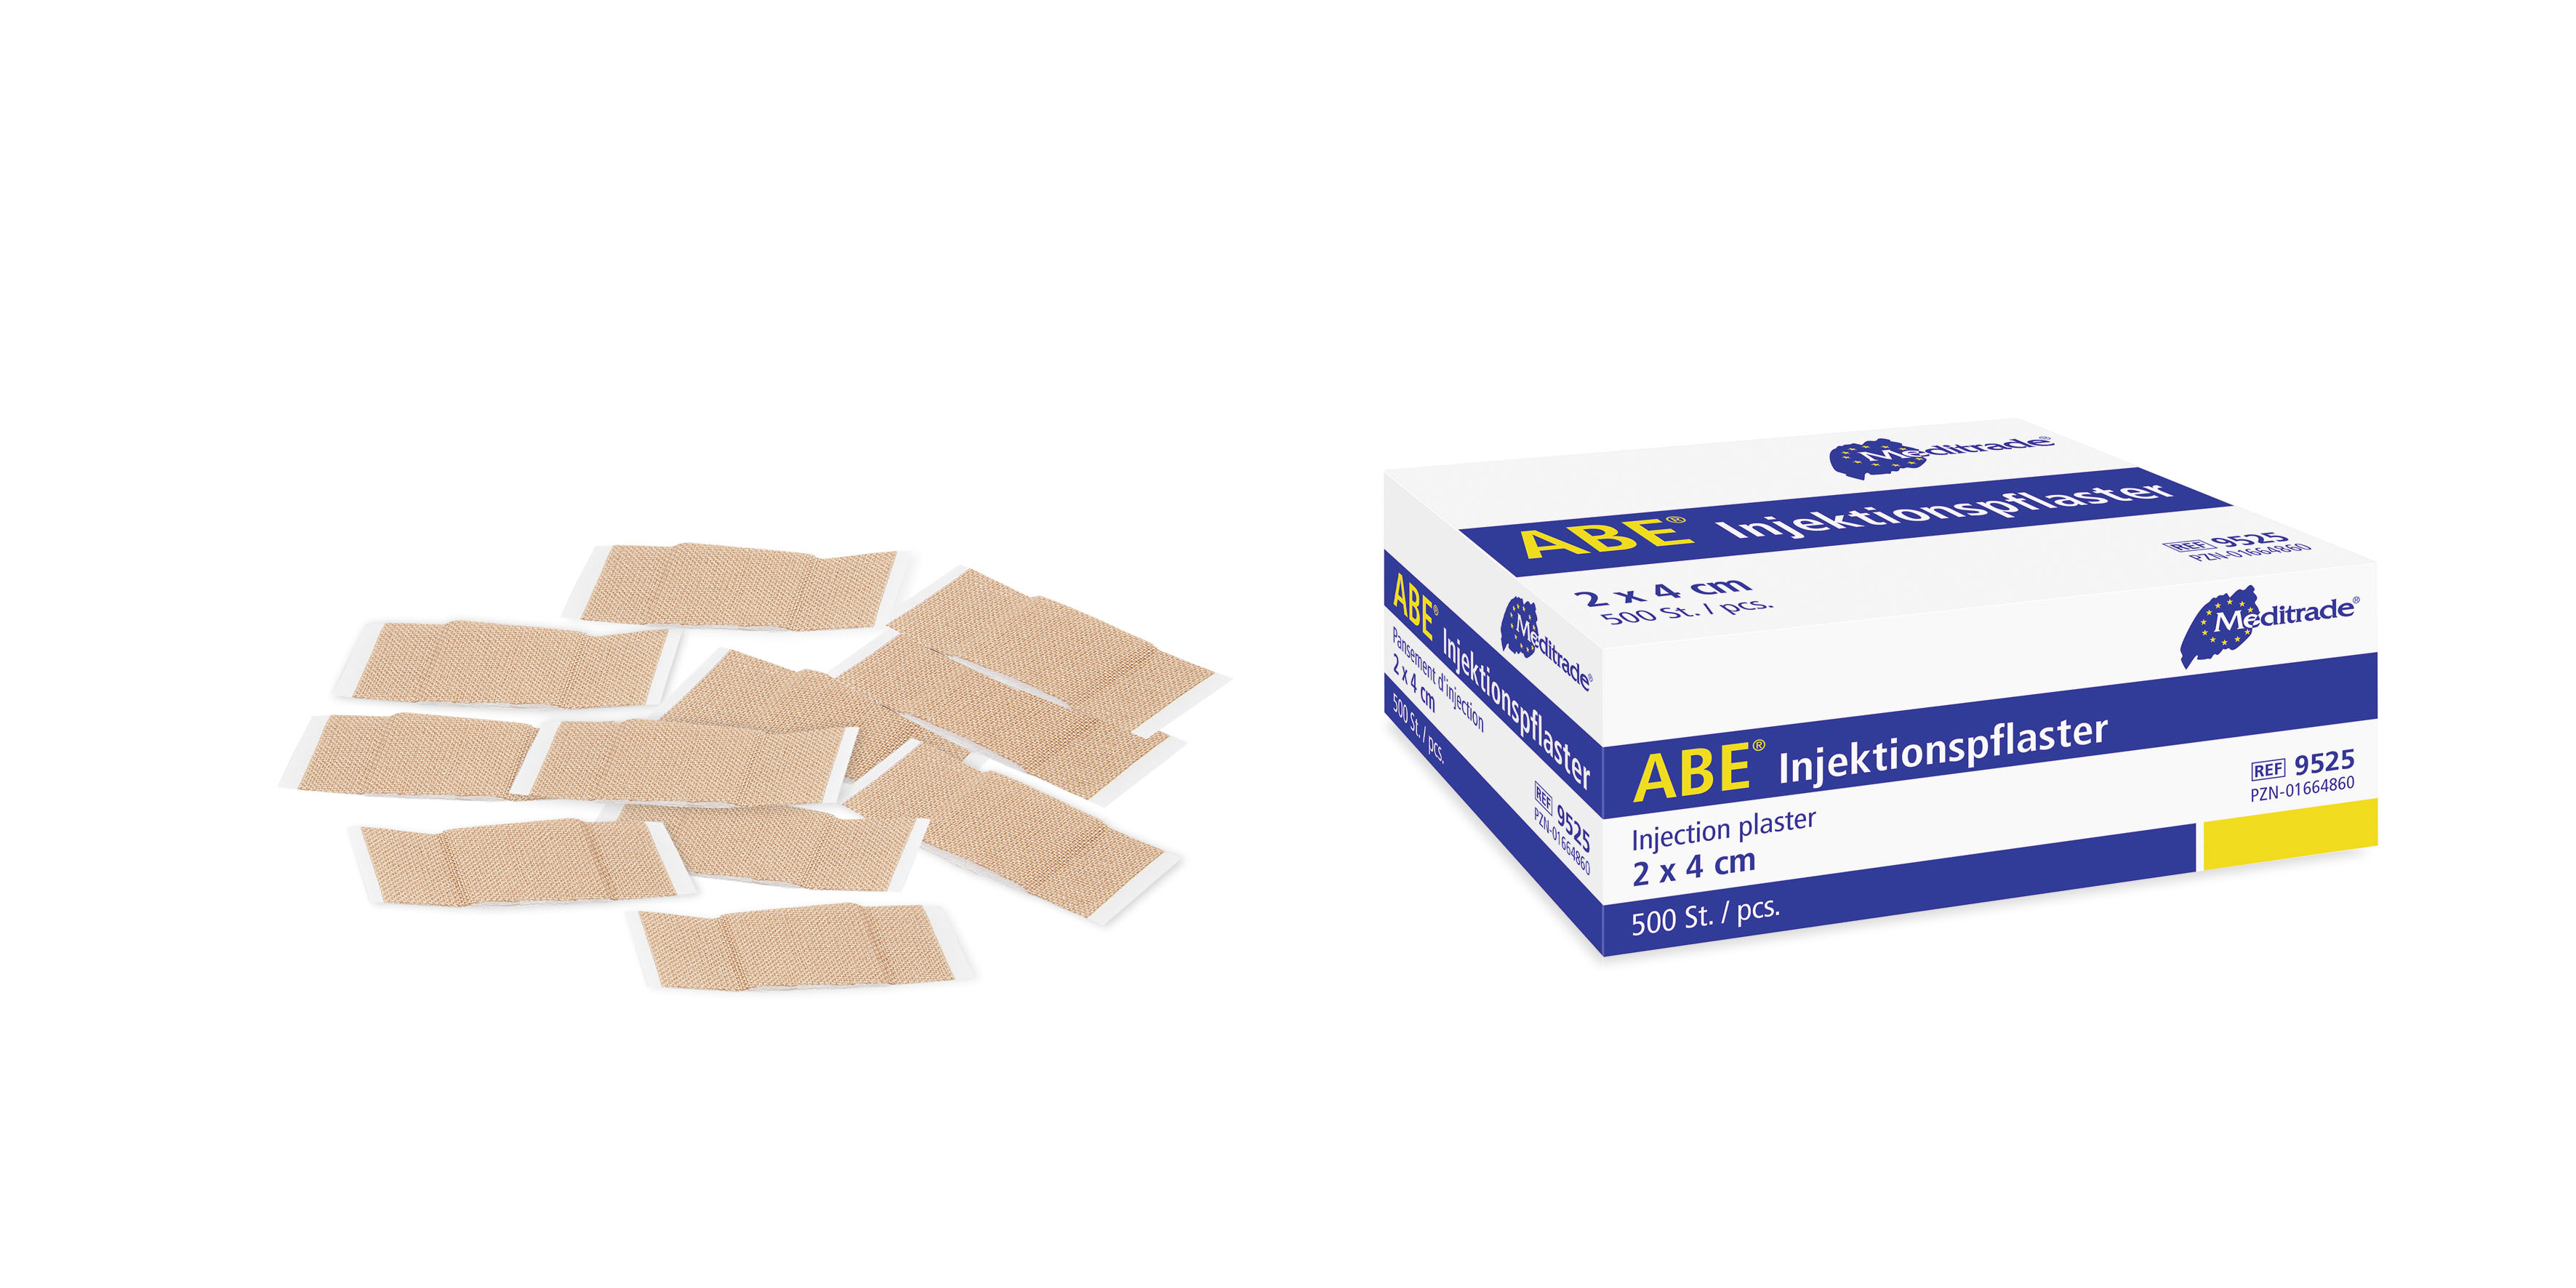 Meditrade ABE® Injektionspflaster / 2 x 4 cm / 500 Stück p. P. / PZN: 01664860